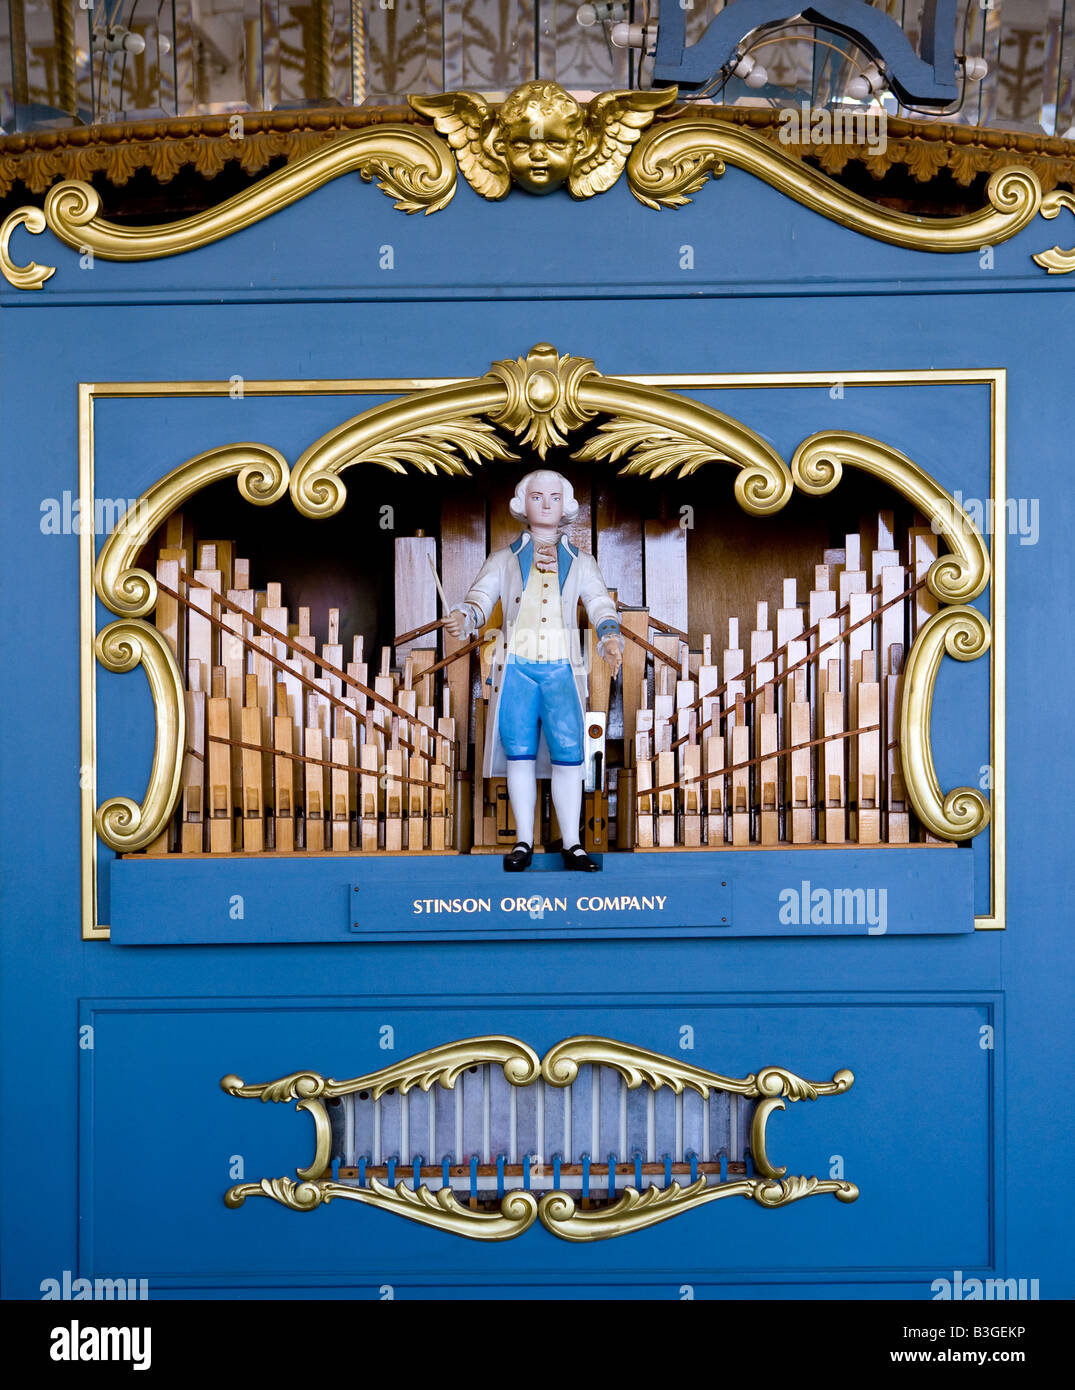 Une petite figure en bois sculpté qui danse dans l'orgue à tuyaux à l'intérieur du phare de New Haven Park Carousel Horse ride. Banque D'Images